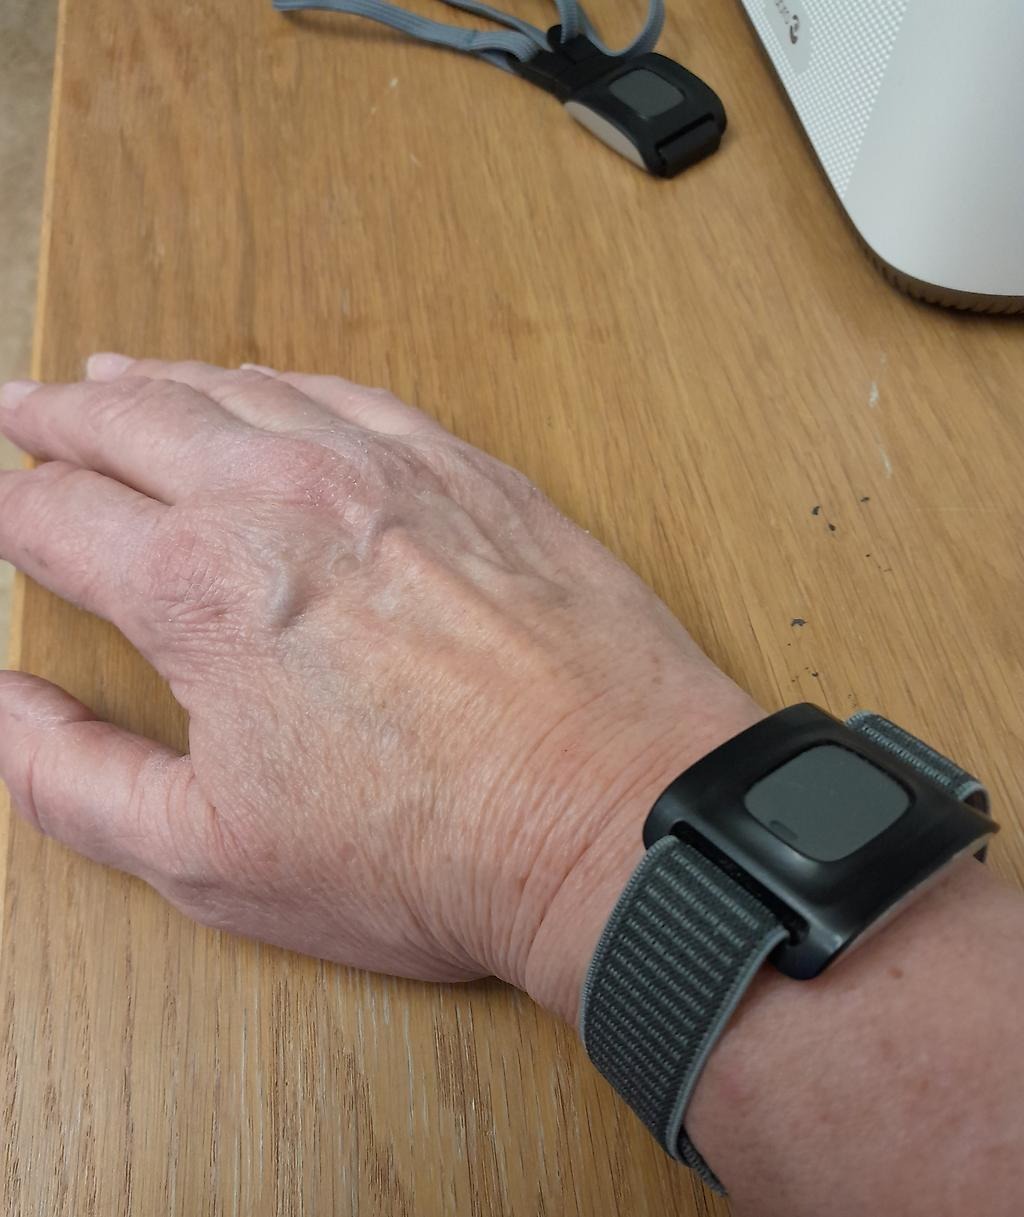 Bilden visar en underarm med ett trygghetslarm runt handleden